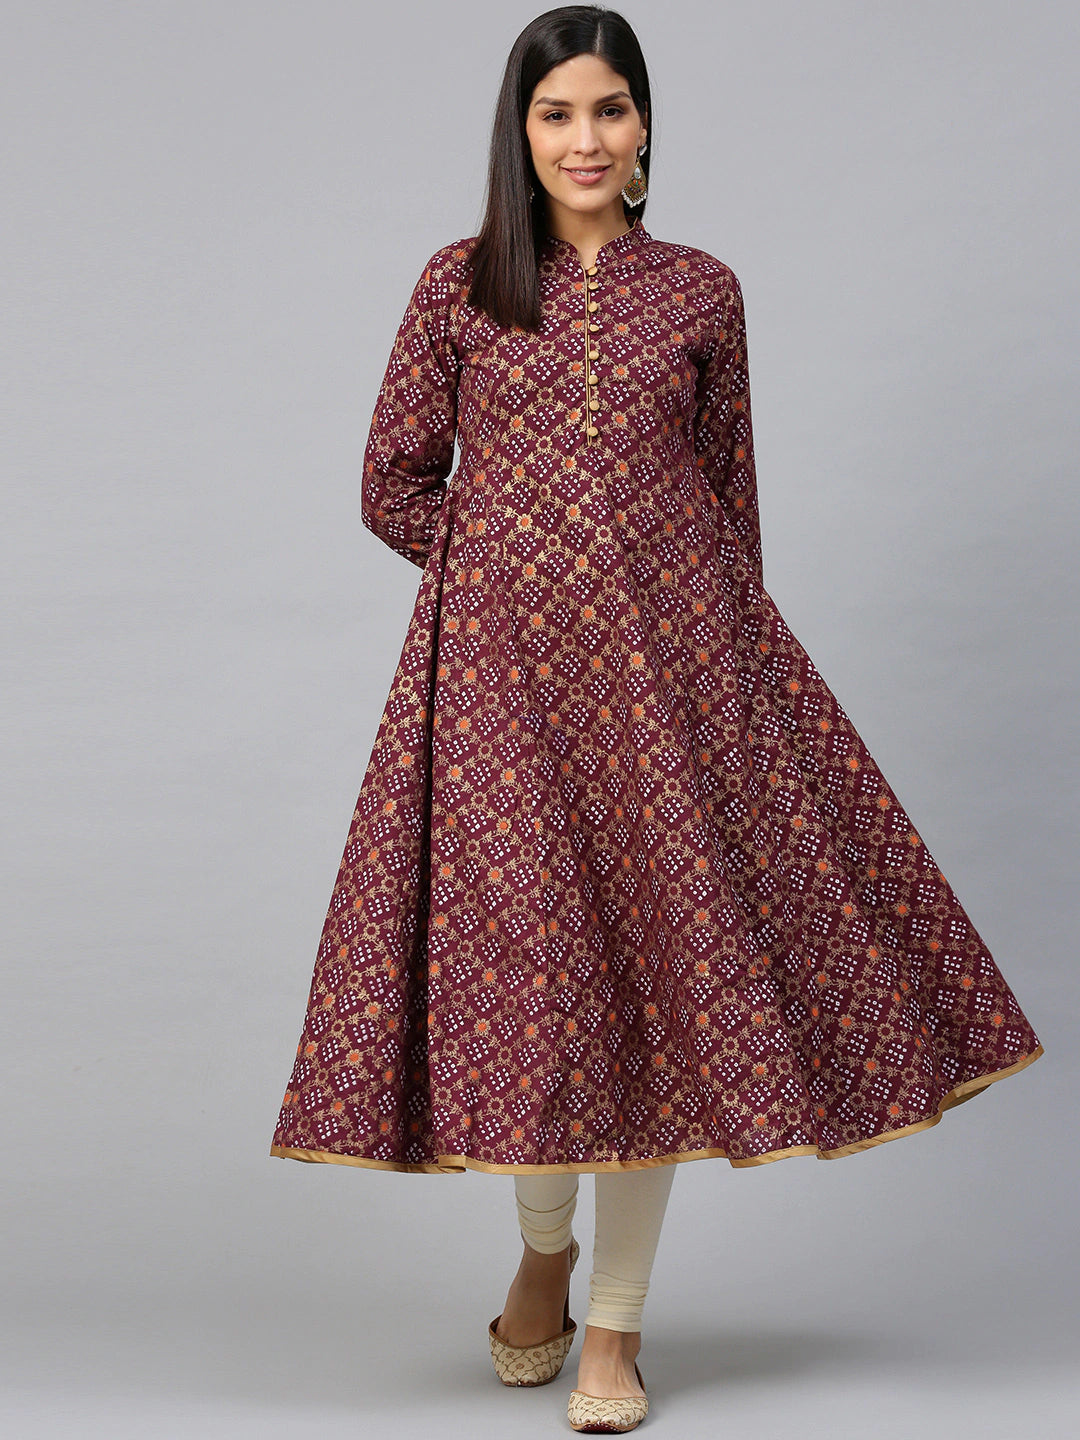 Women's Magenta & Golden Bandhani Printed Anarkali Kurta - Bhama Couture